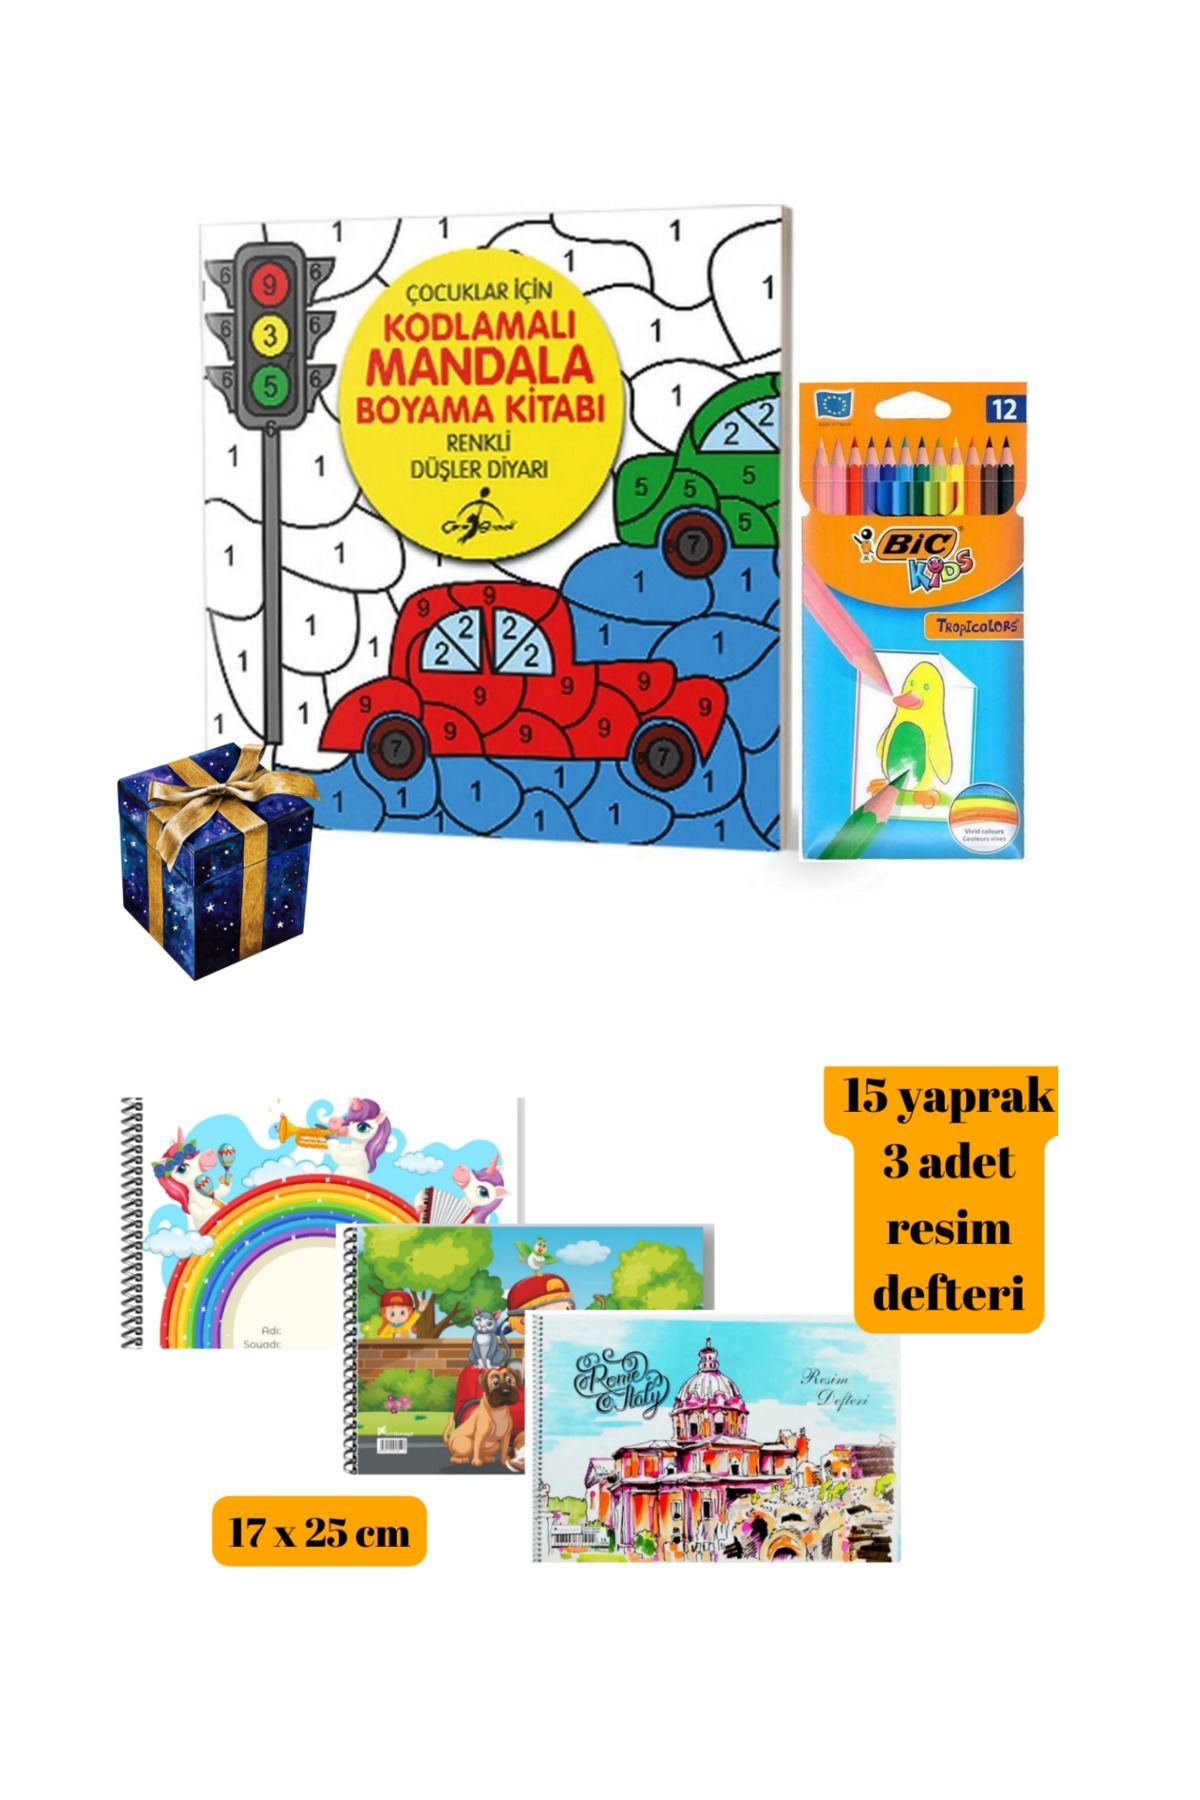 Bic کتاب رنگ آمیزی ماندالا برای کودکان دفترچه یادداشت و مداد رنگی Bic 809888544